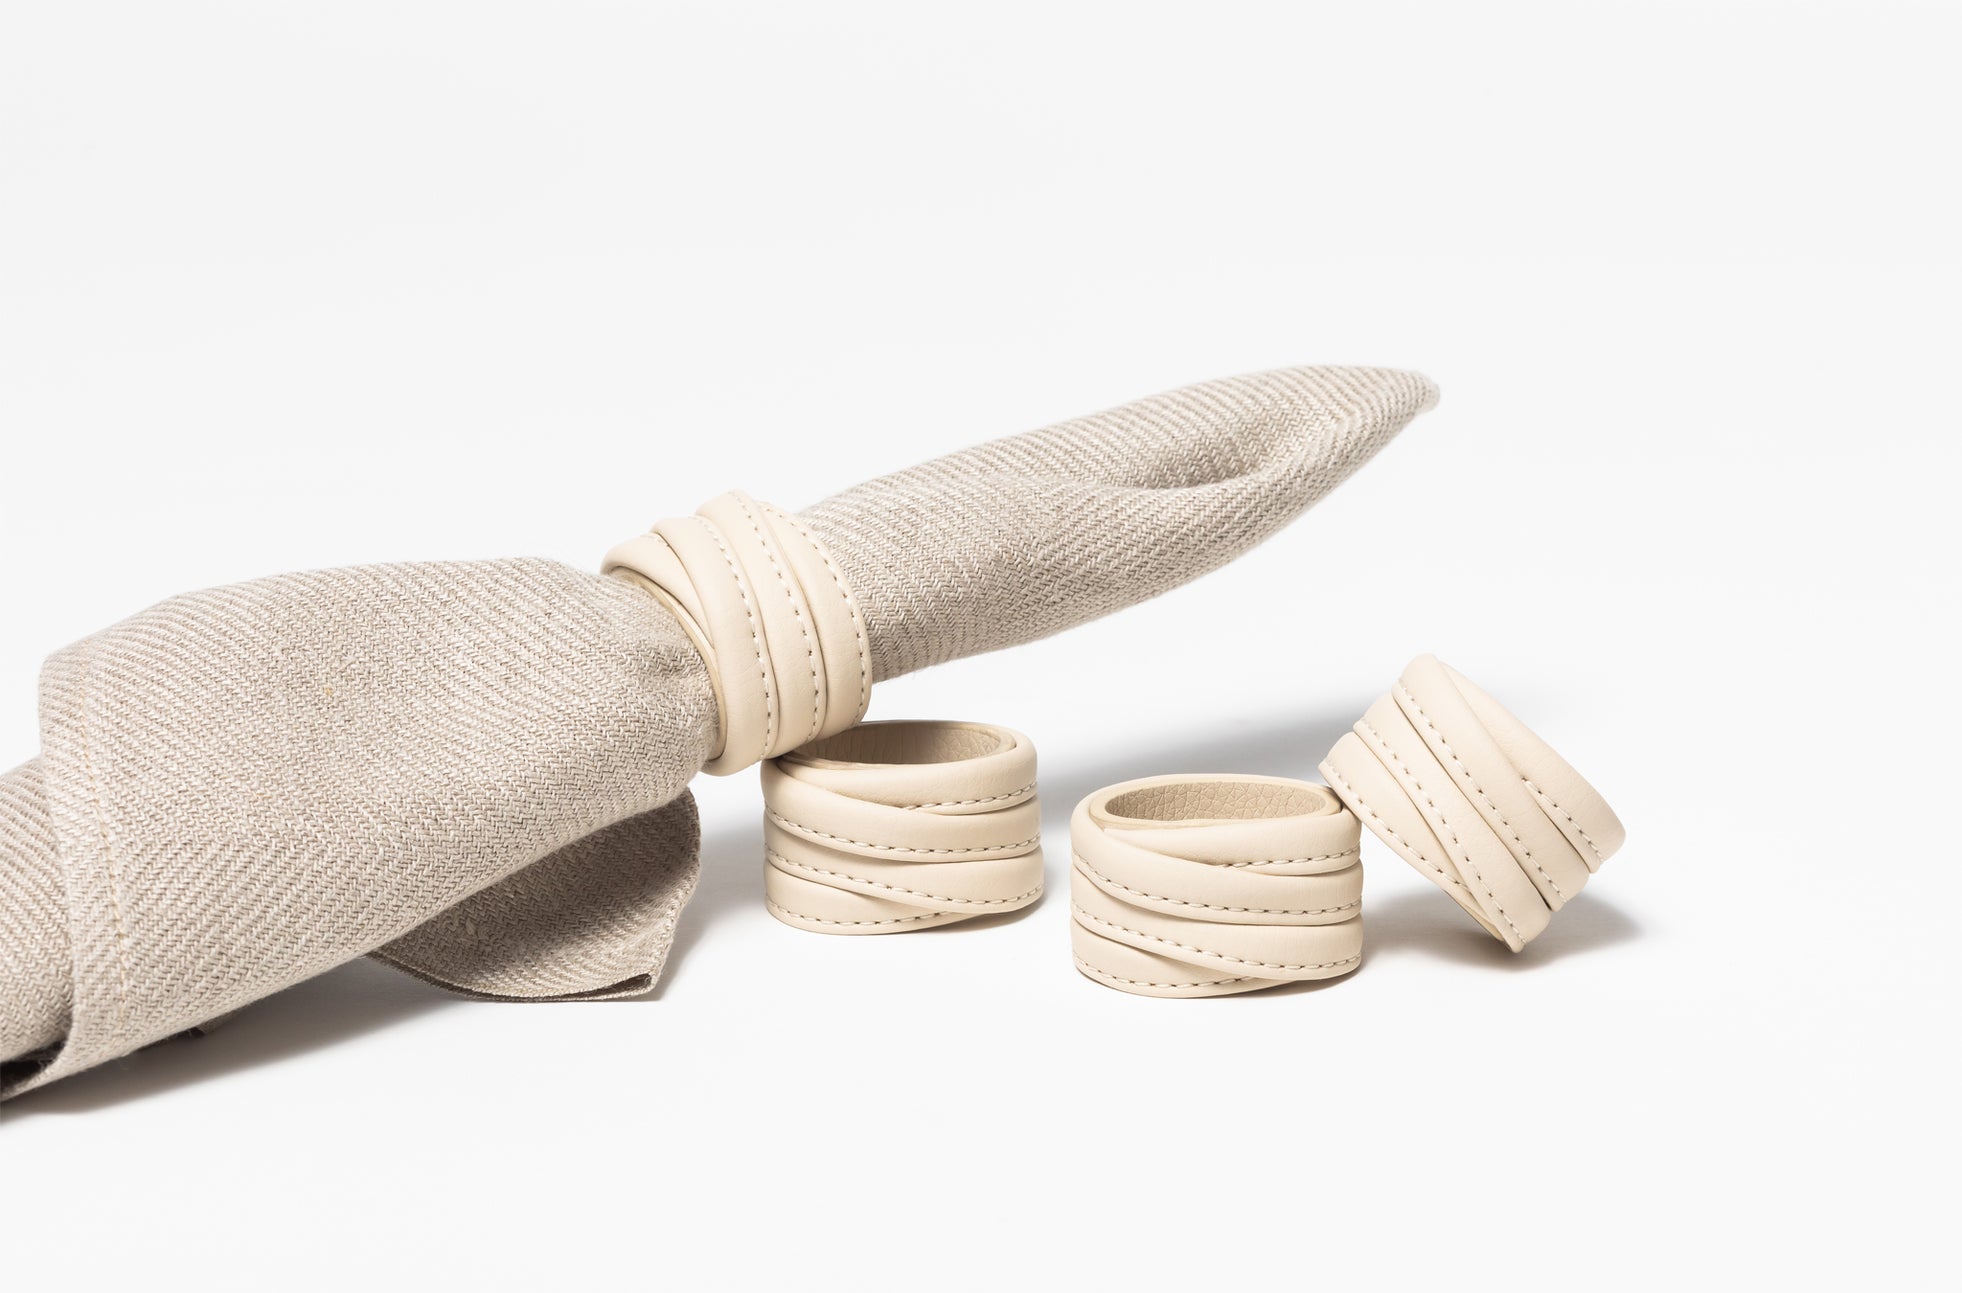 The Napkin Rings - Sample Sale in Technik-Leather in Oat image 2